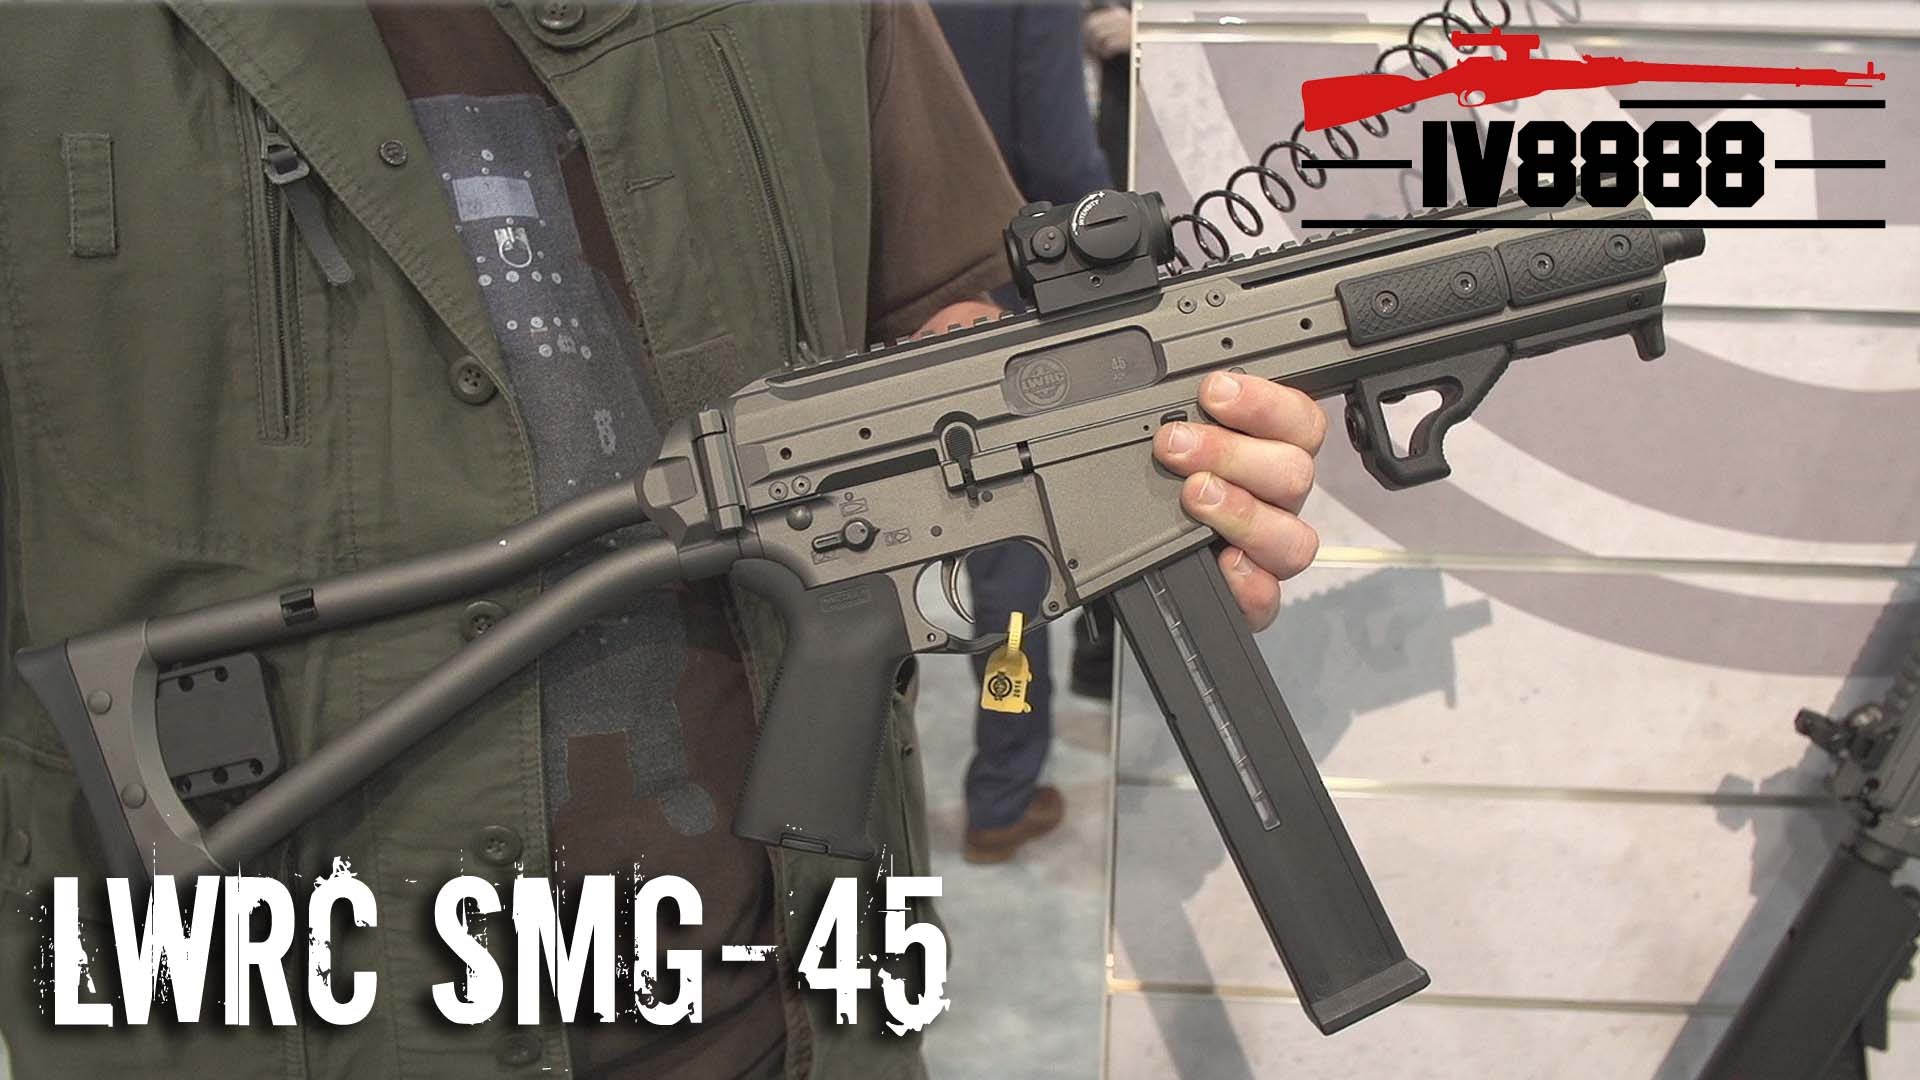 SHOT Show 2016: "New" LWRC SMG-45.